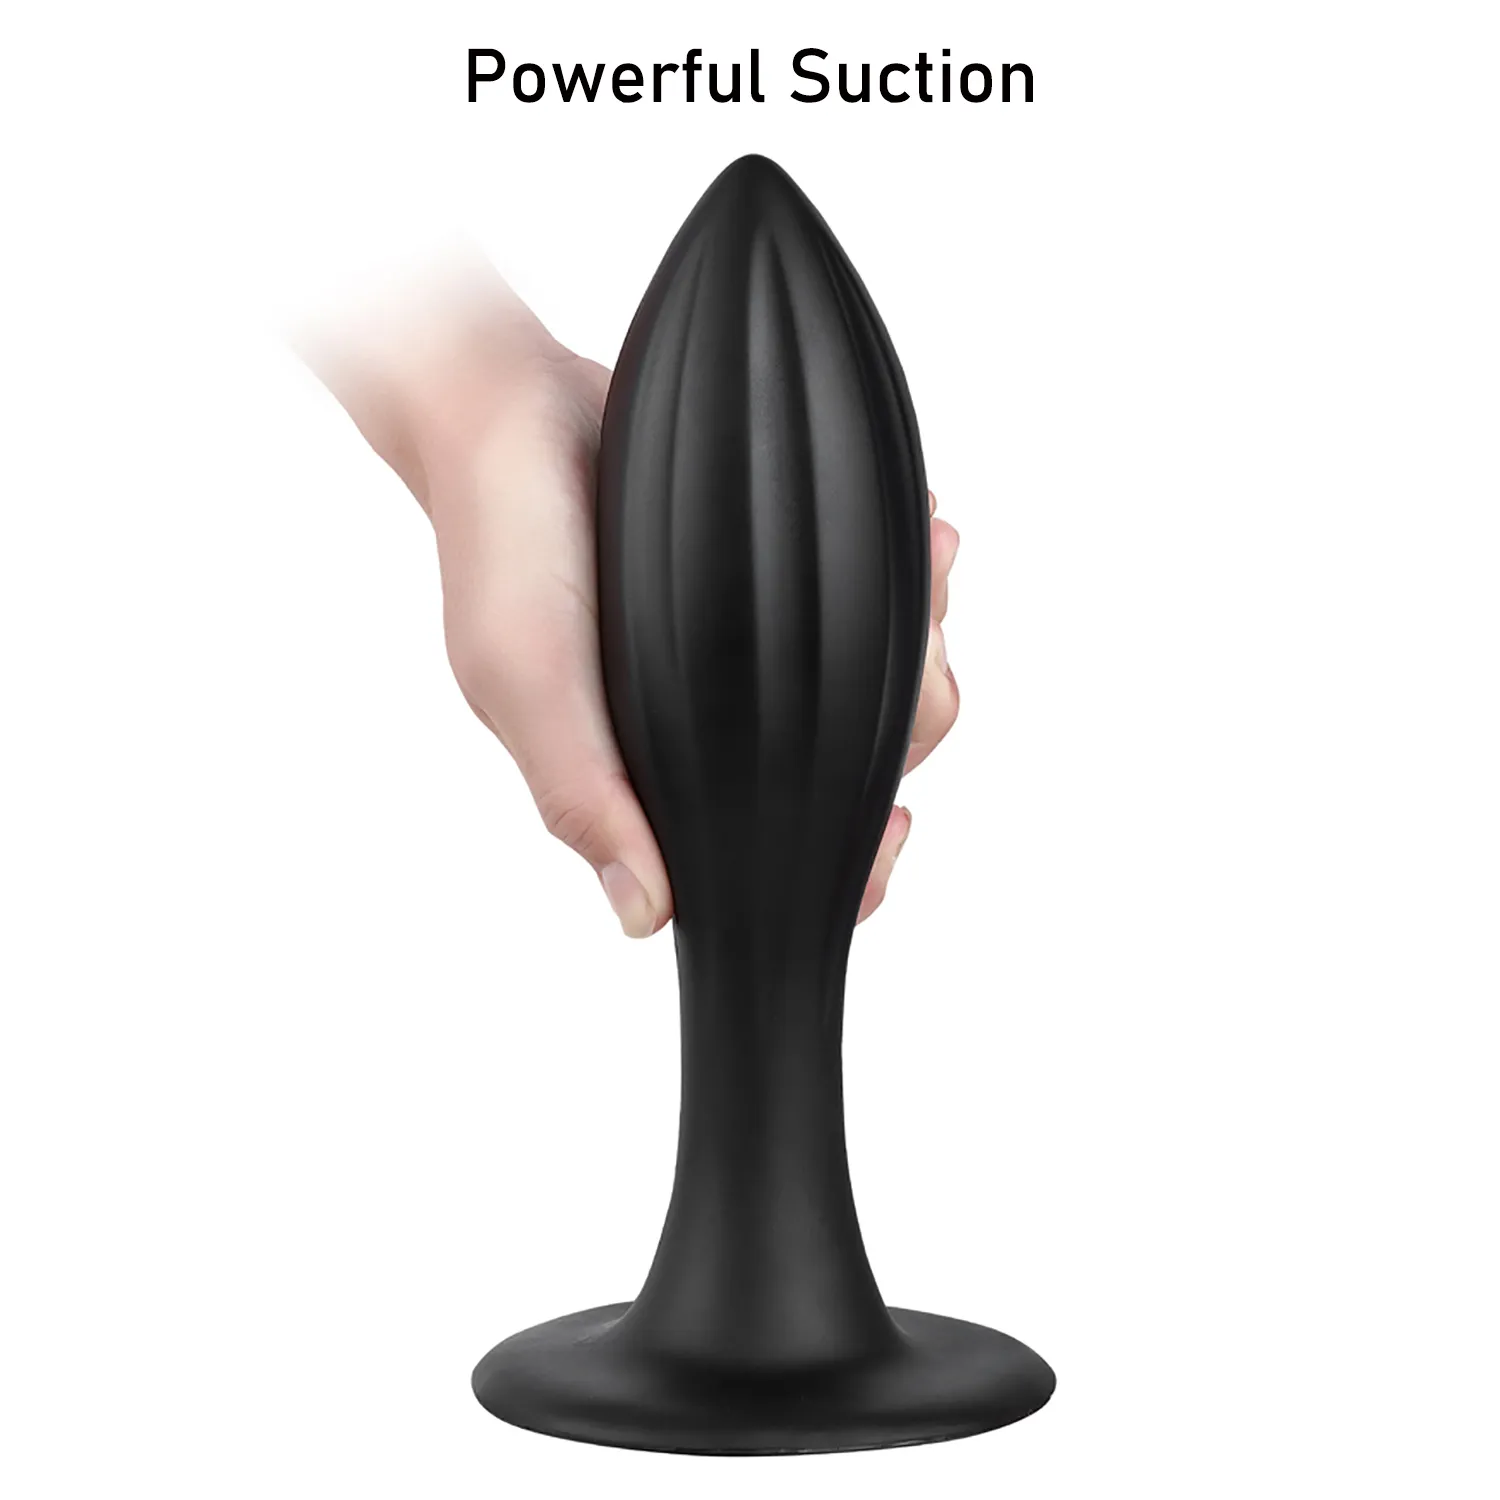 Énorme plug anal godes sexy jouets dilatateur en forme de cône stimule le massage du vagin et de l'anus fesses de la prostate